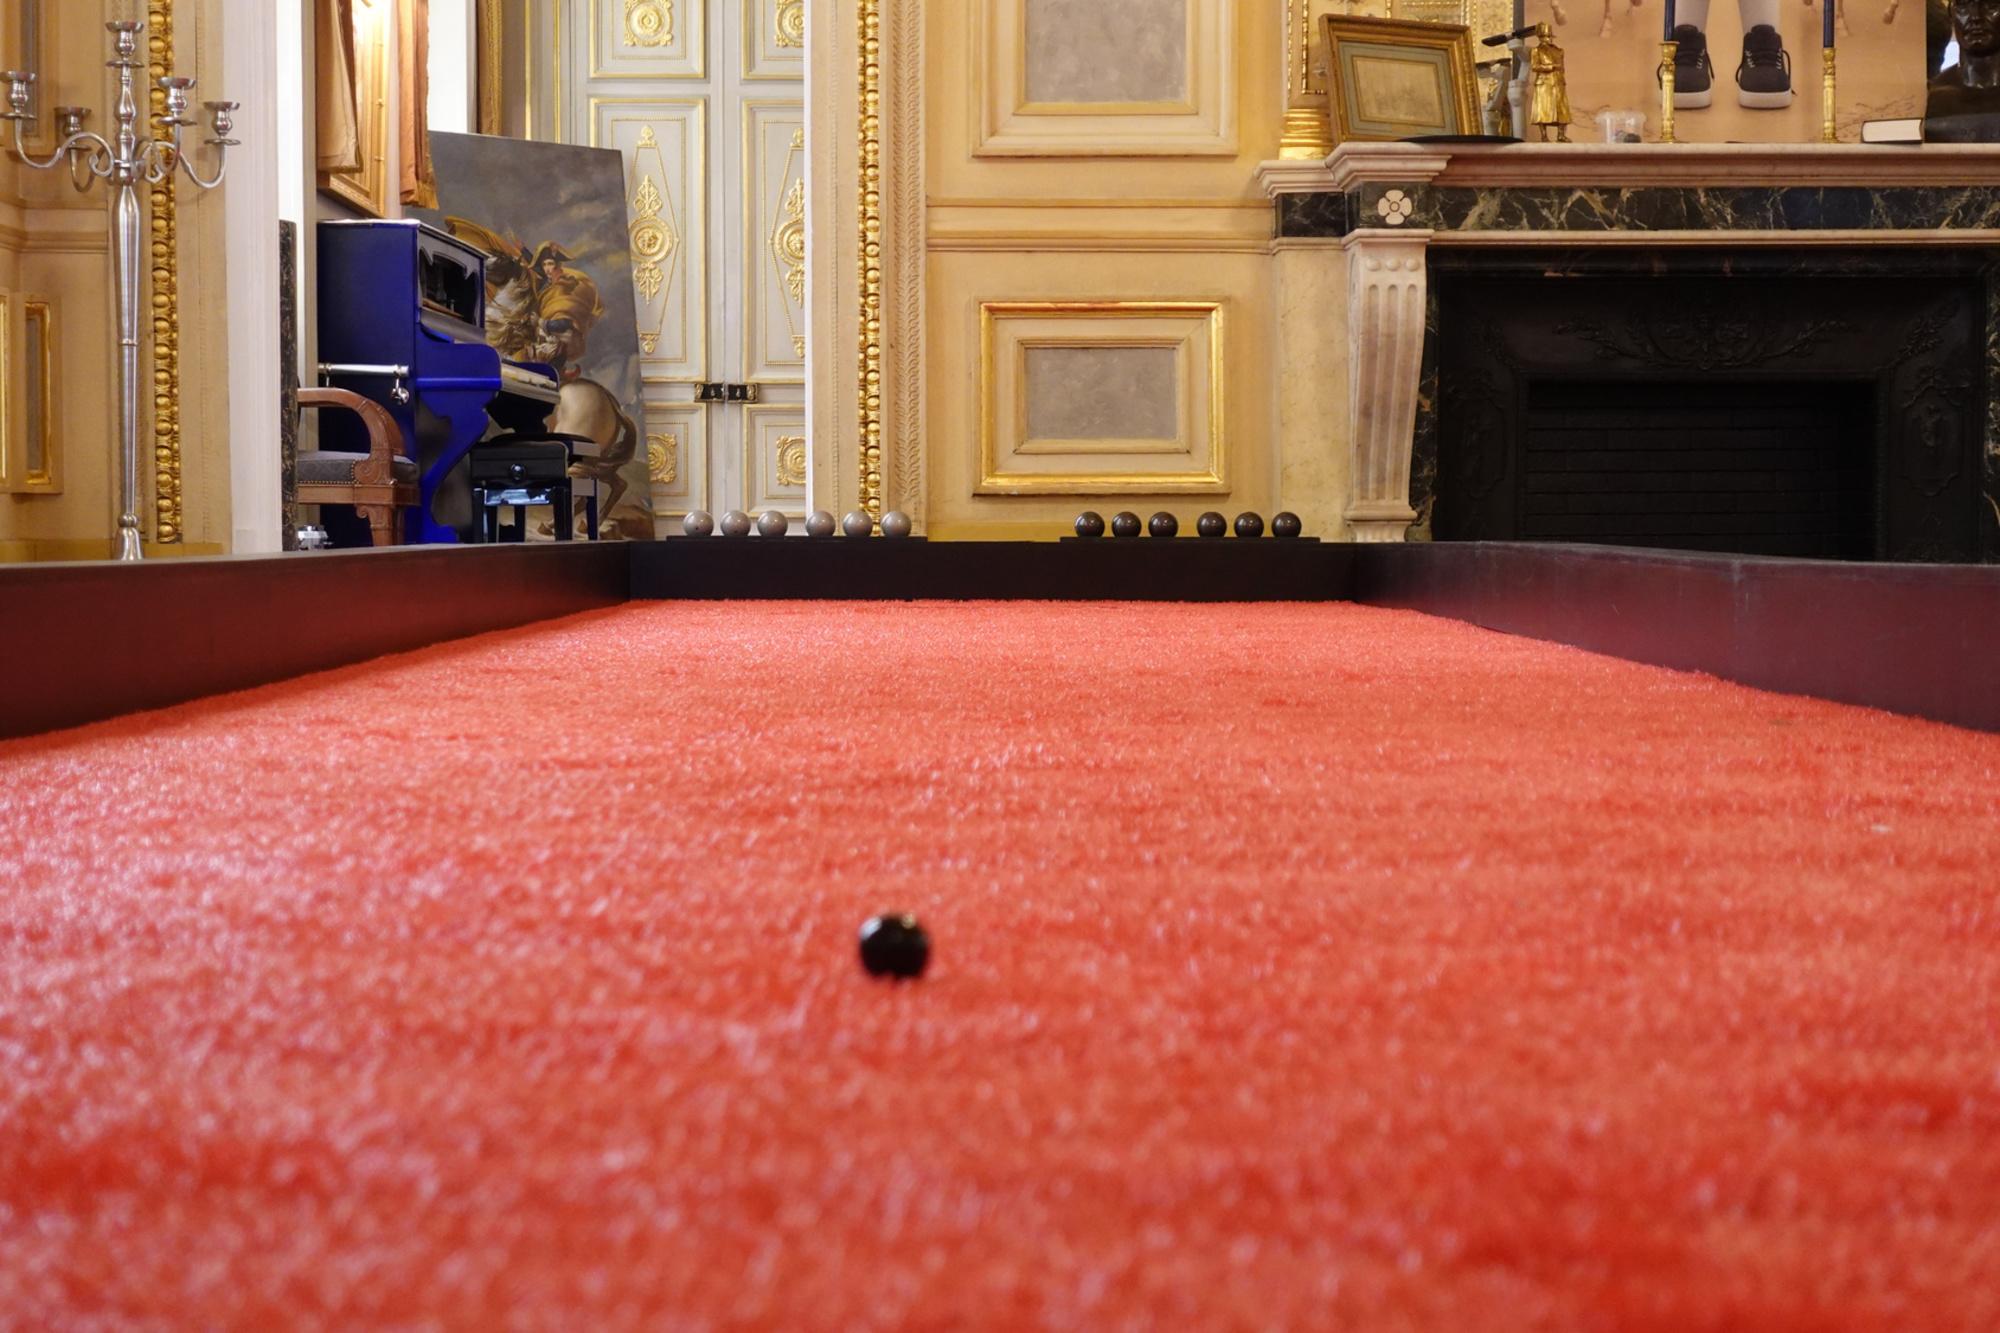 Disponible à l'exportation, la dernière installation de Boogle a eu lieu à Paris, au Palais Vivienne.